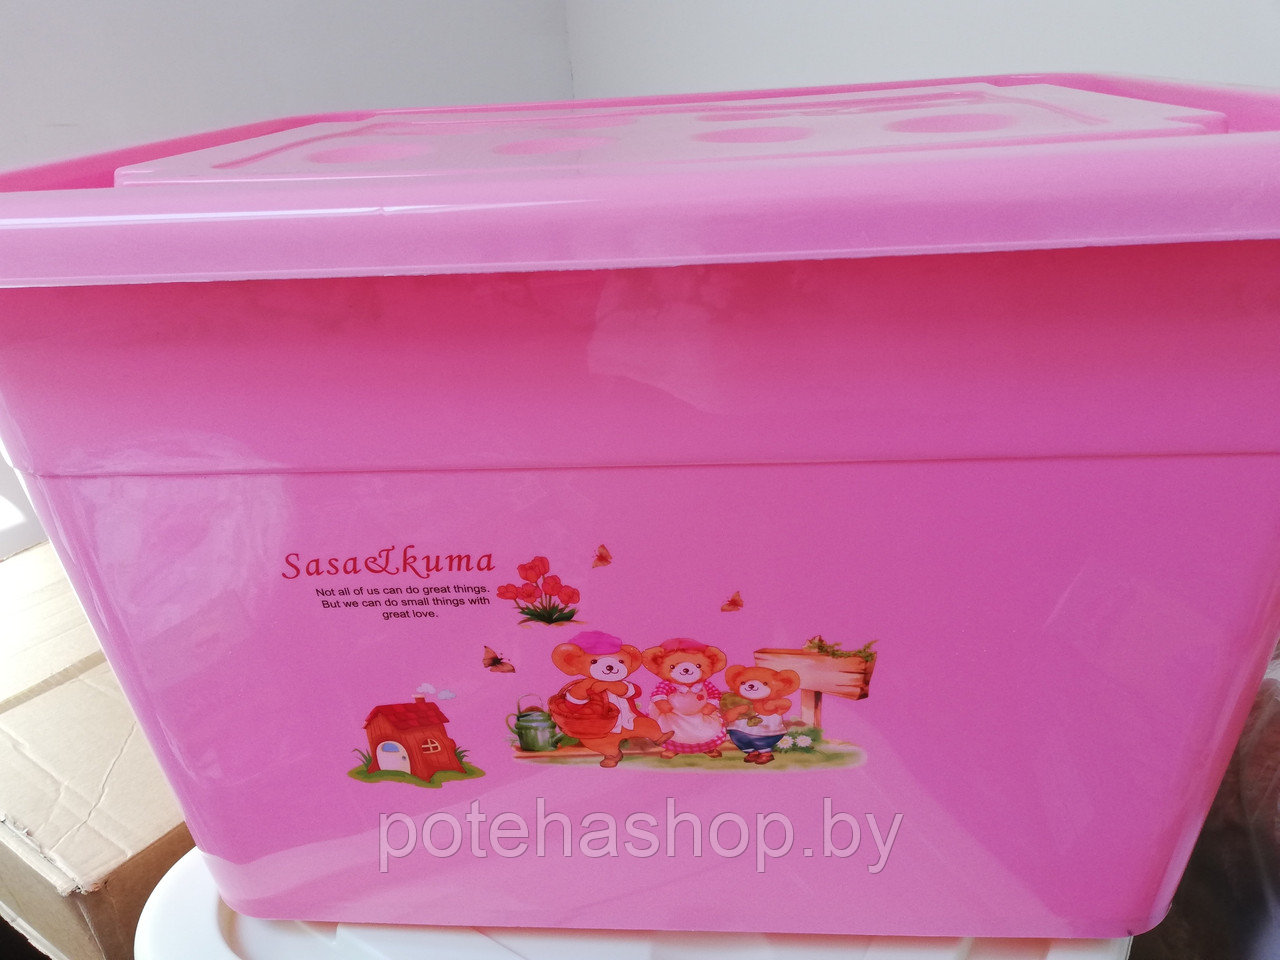 Ящик для игрушек 61,5х37 см Цвет розовый